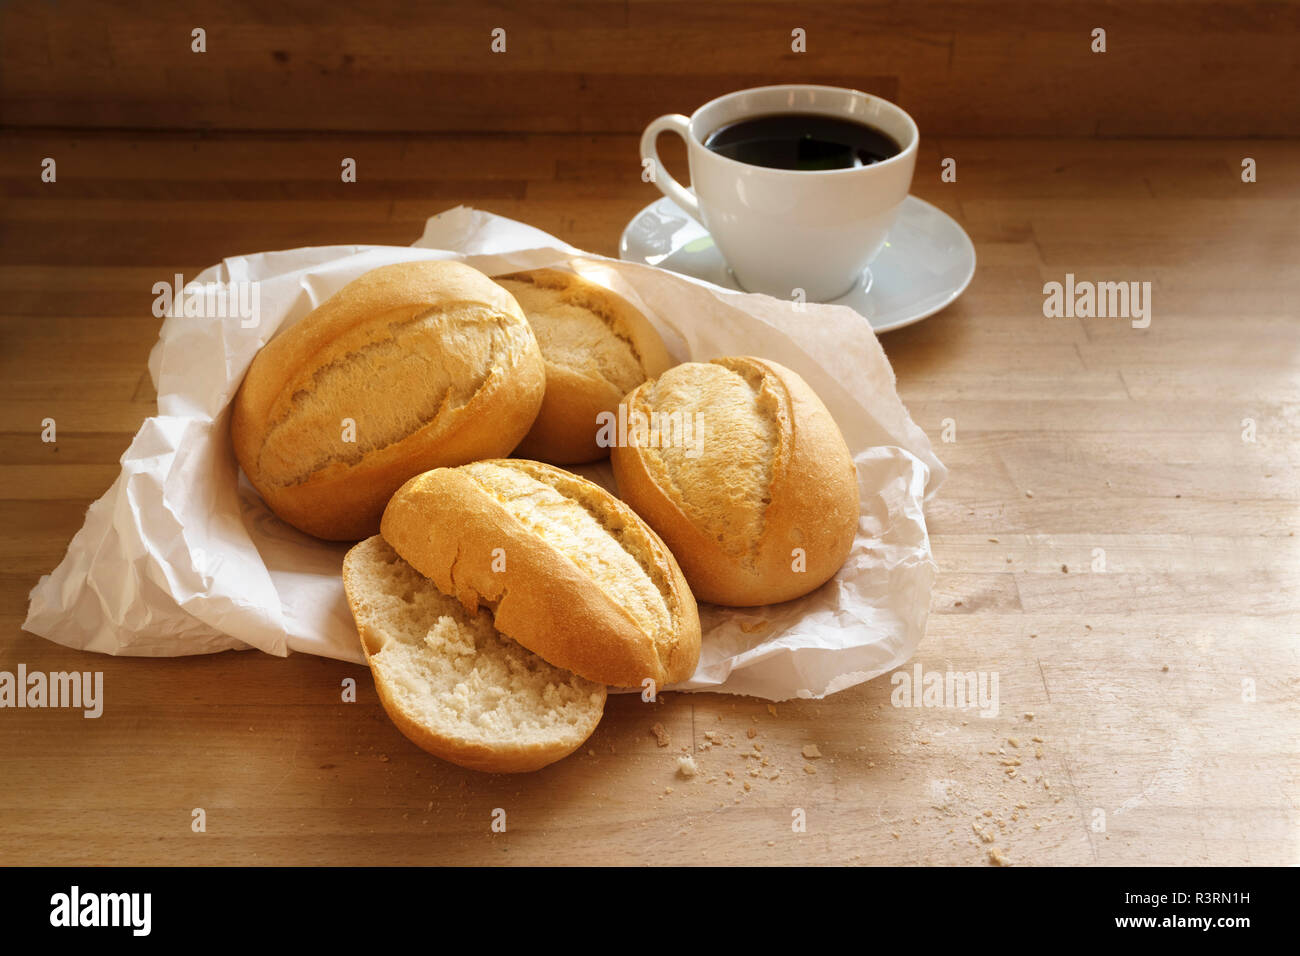 Brötchen oder Semmeln in einem White Paper bag und eine Tasse Kaffee auf  einem Holztisch, Kopieren, ausgewählte konzentrieren, enge Tiefenschärfe  Stockfotografie - Alamy